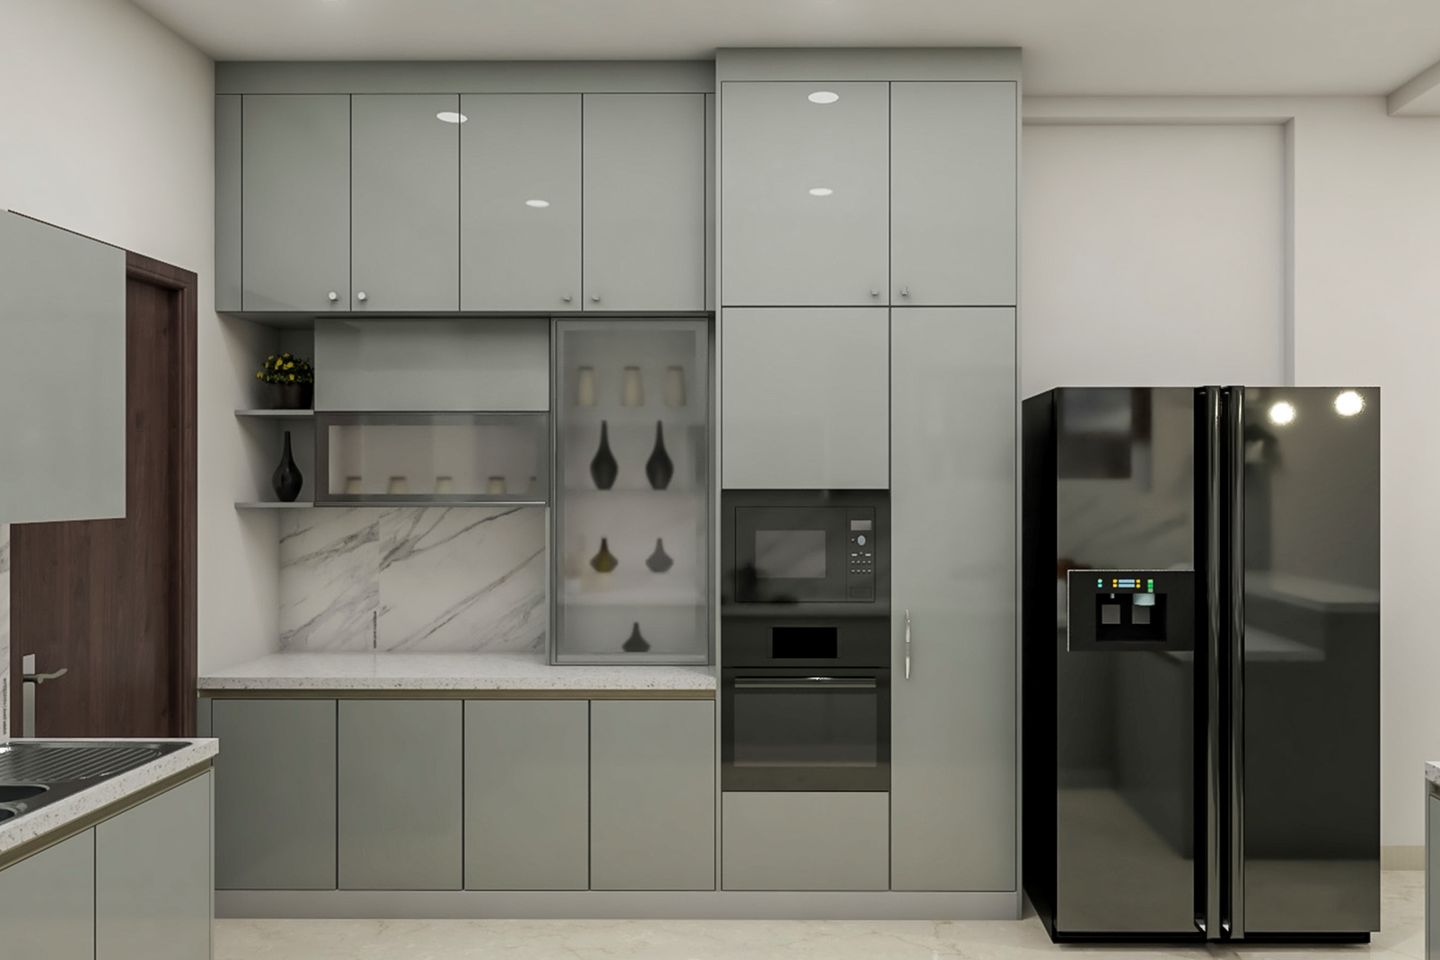 Modern Kitchen Design In Grey - Livspace